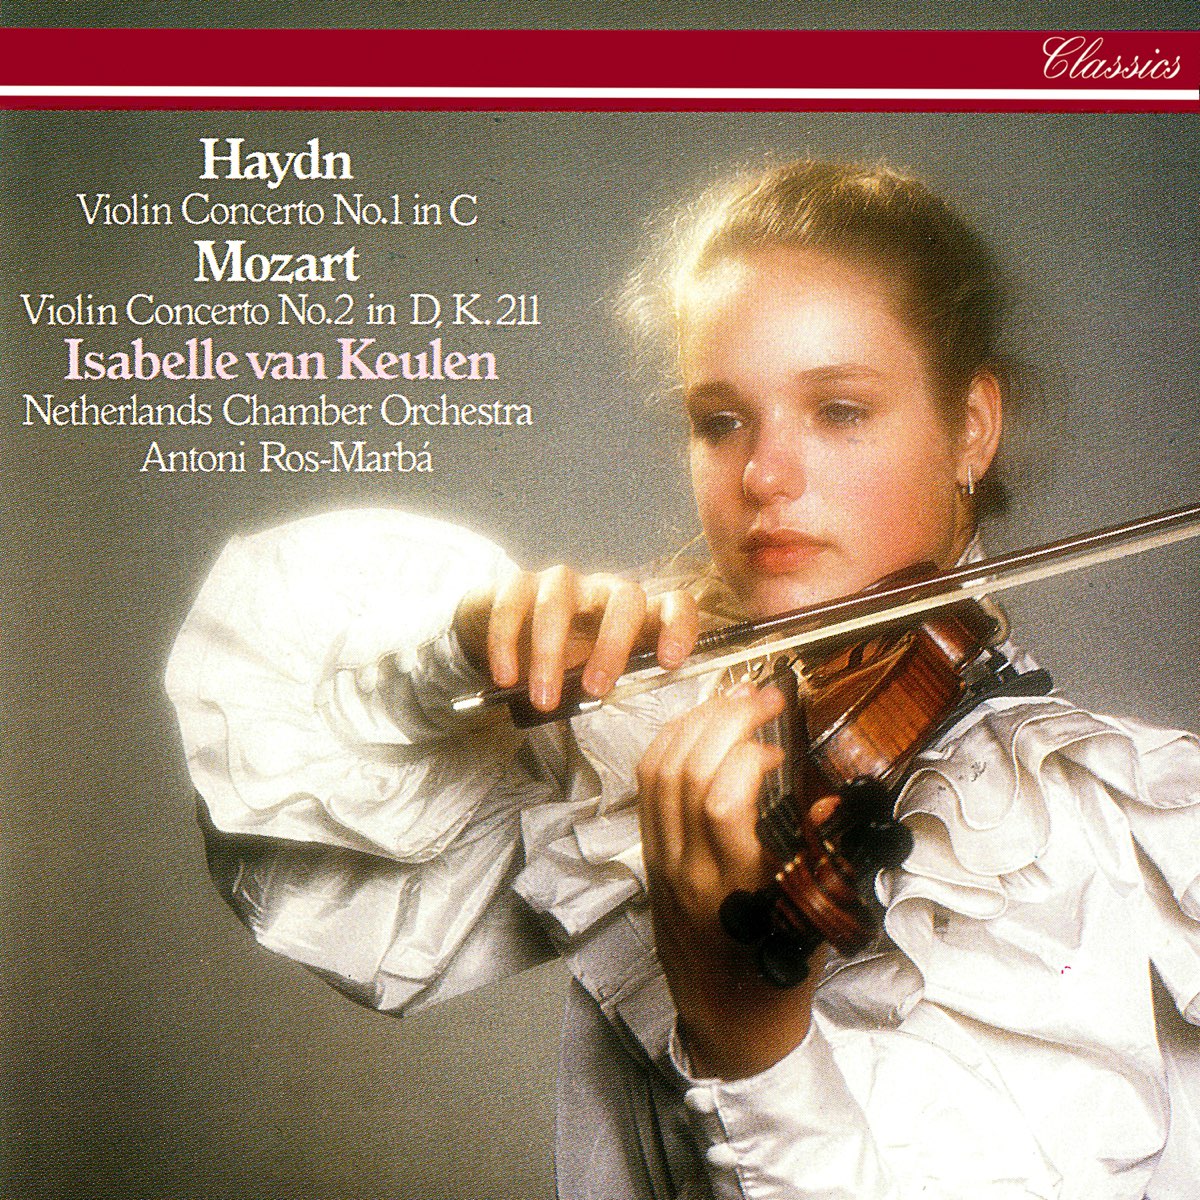 Violin concerto no 2. Mozart Violin. Joseph Haydn Violin. Моцарт в Голландии.